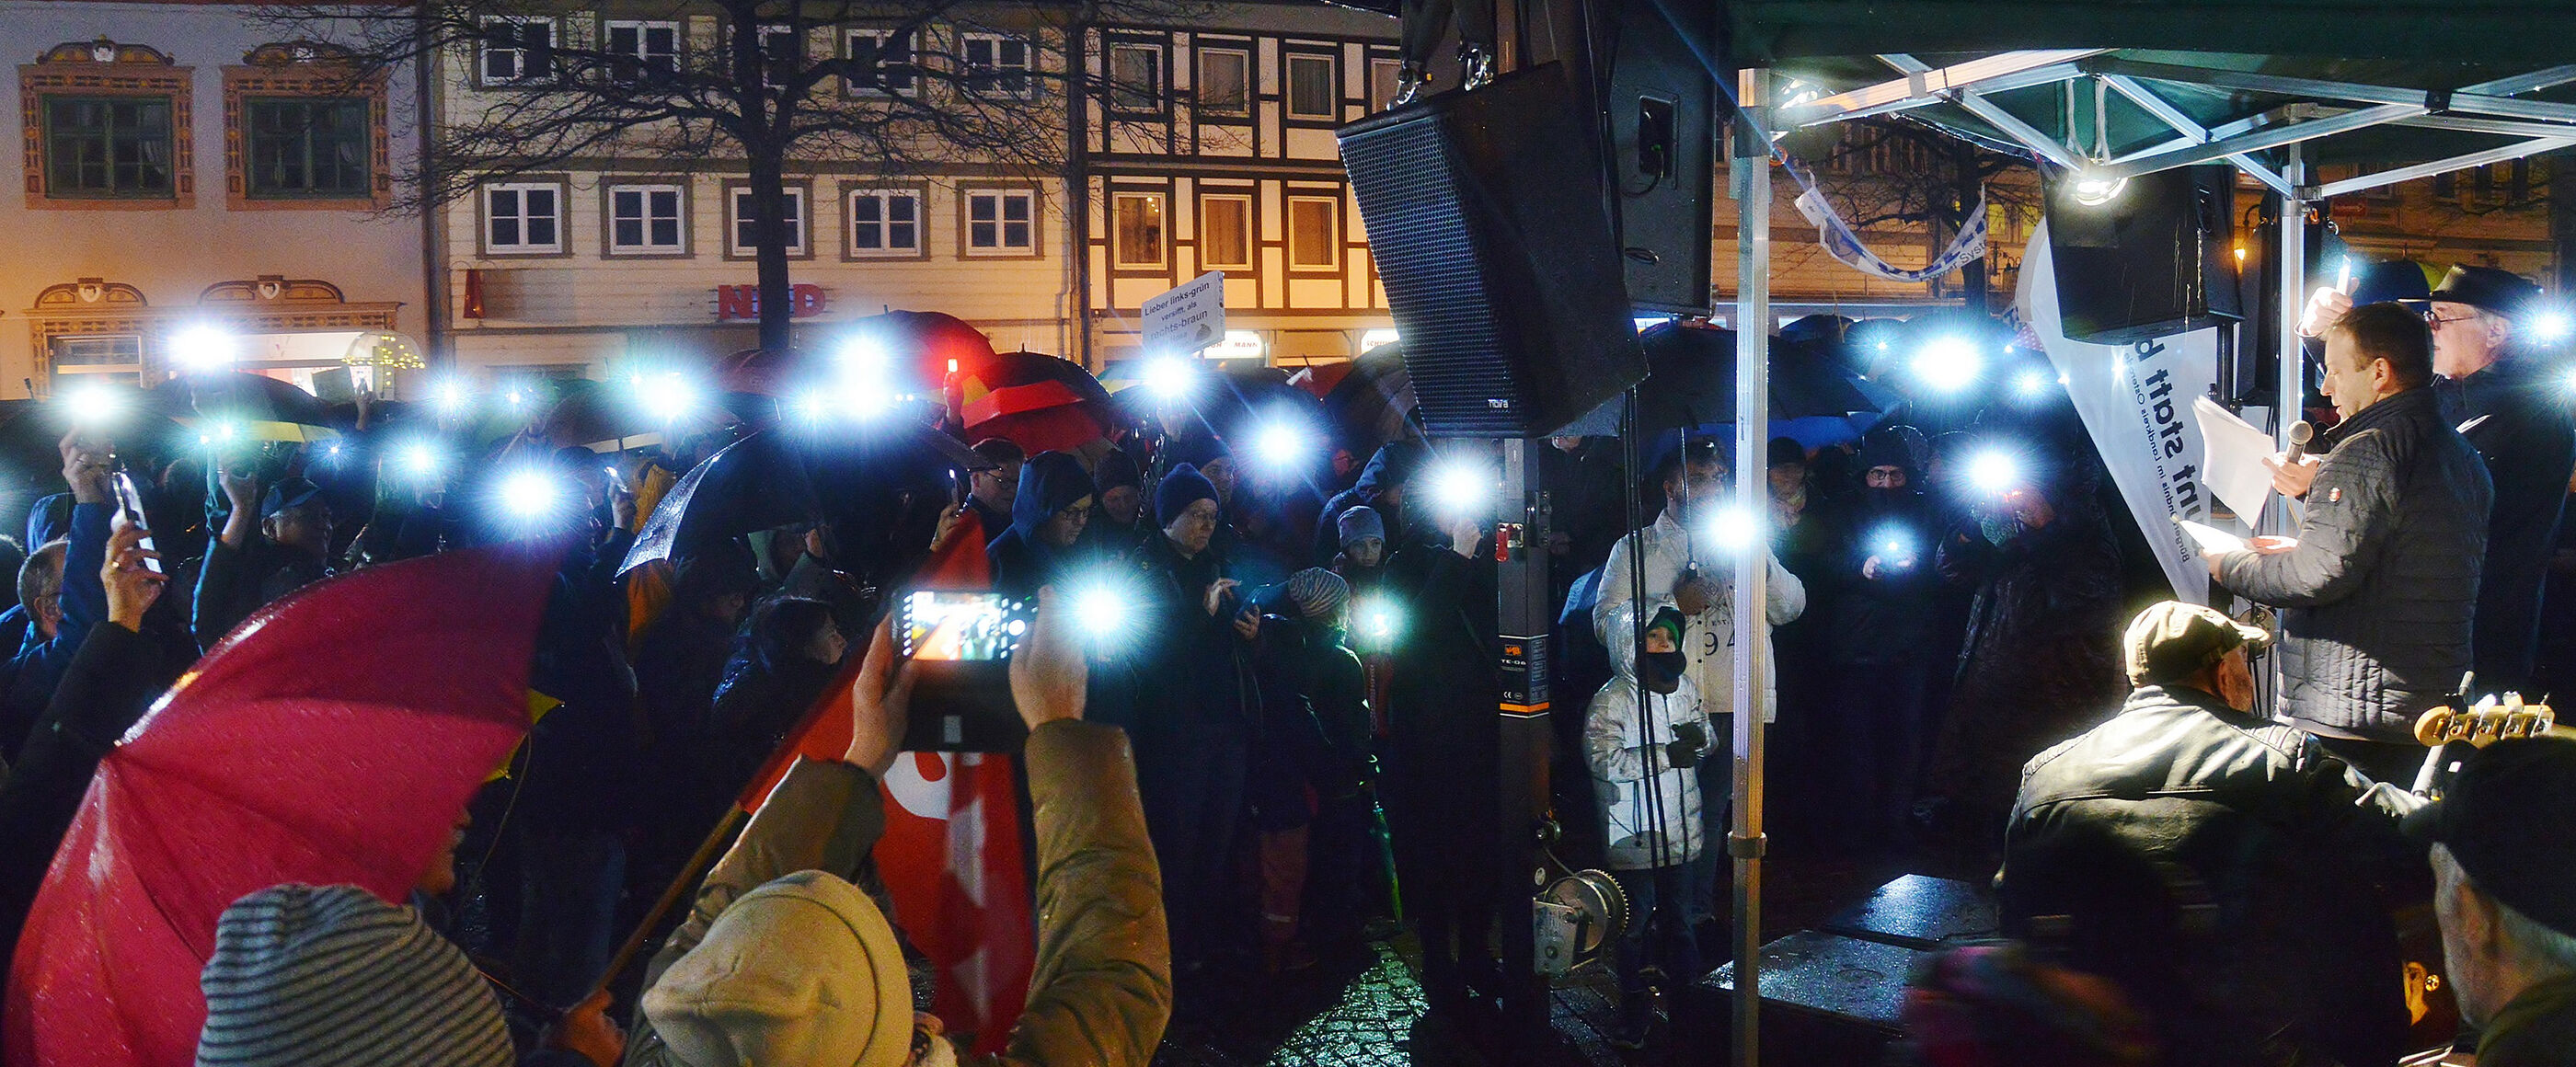 Eine Menschenmenge steht abends mit Lichtern vor einer Bühne.